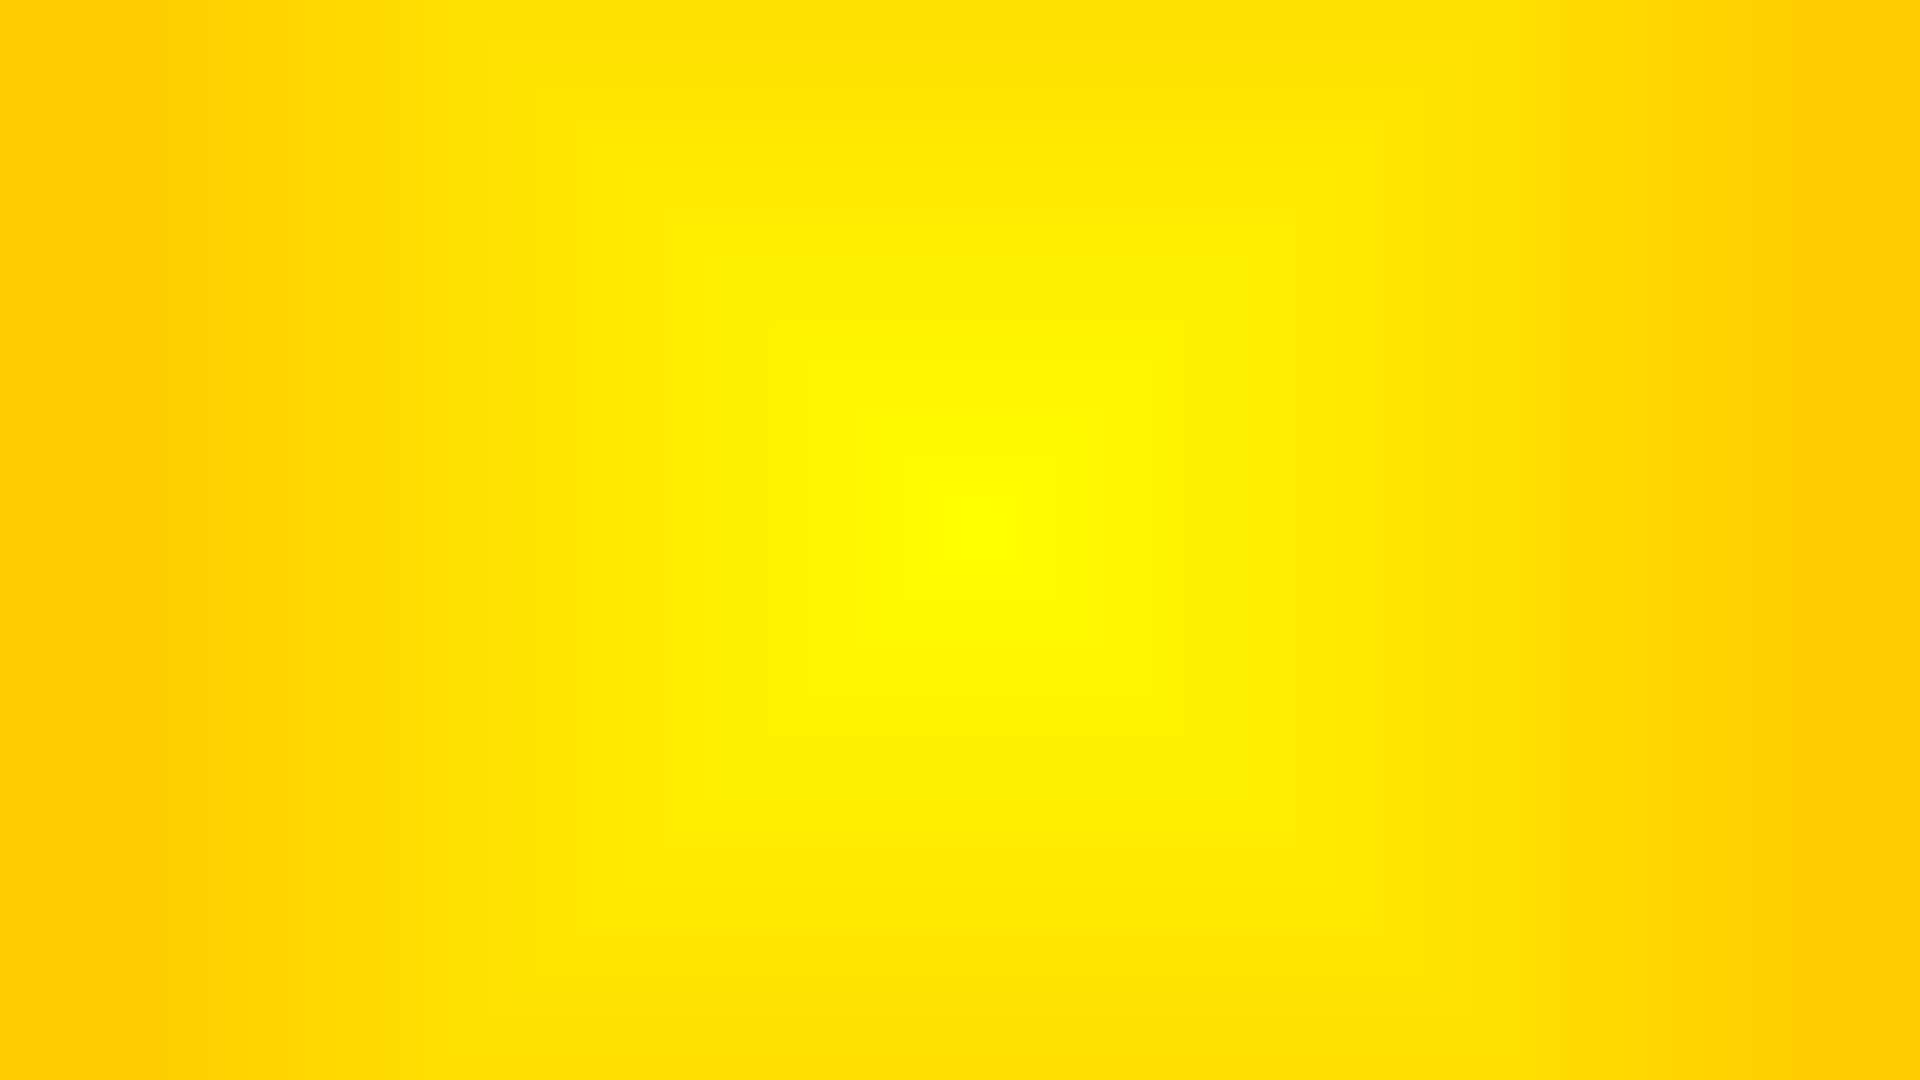 Plain yellow background image